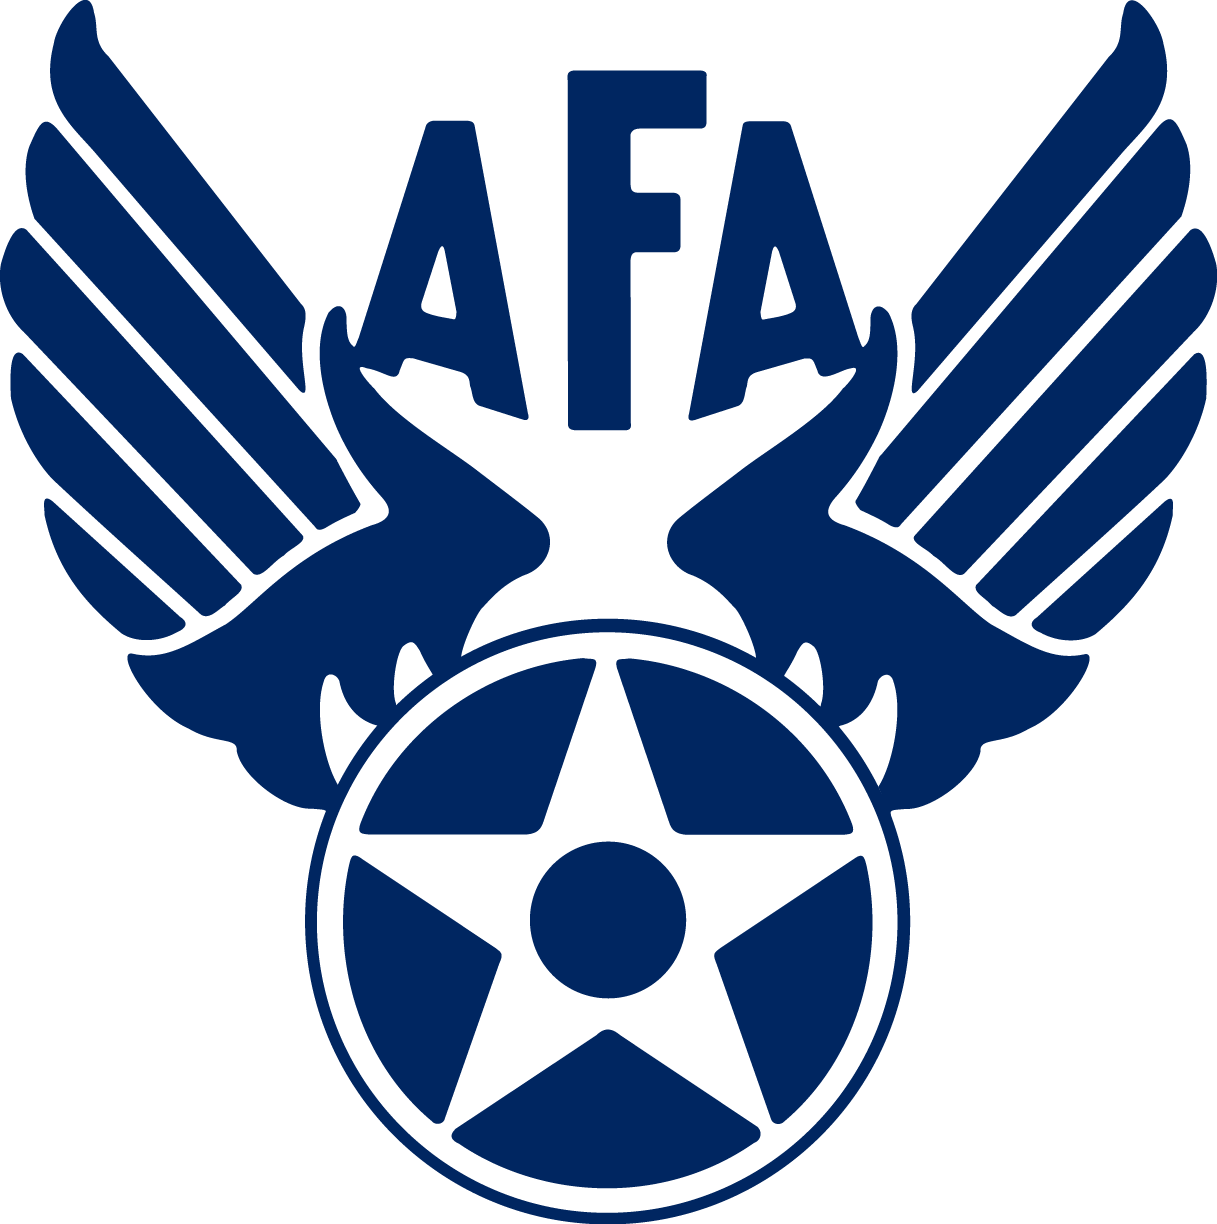 Mainsail - Air Force Association Logo (1217x1224)